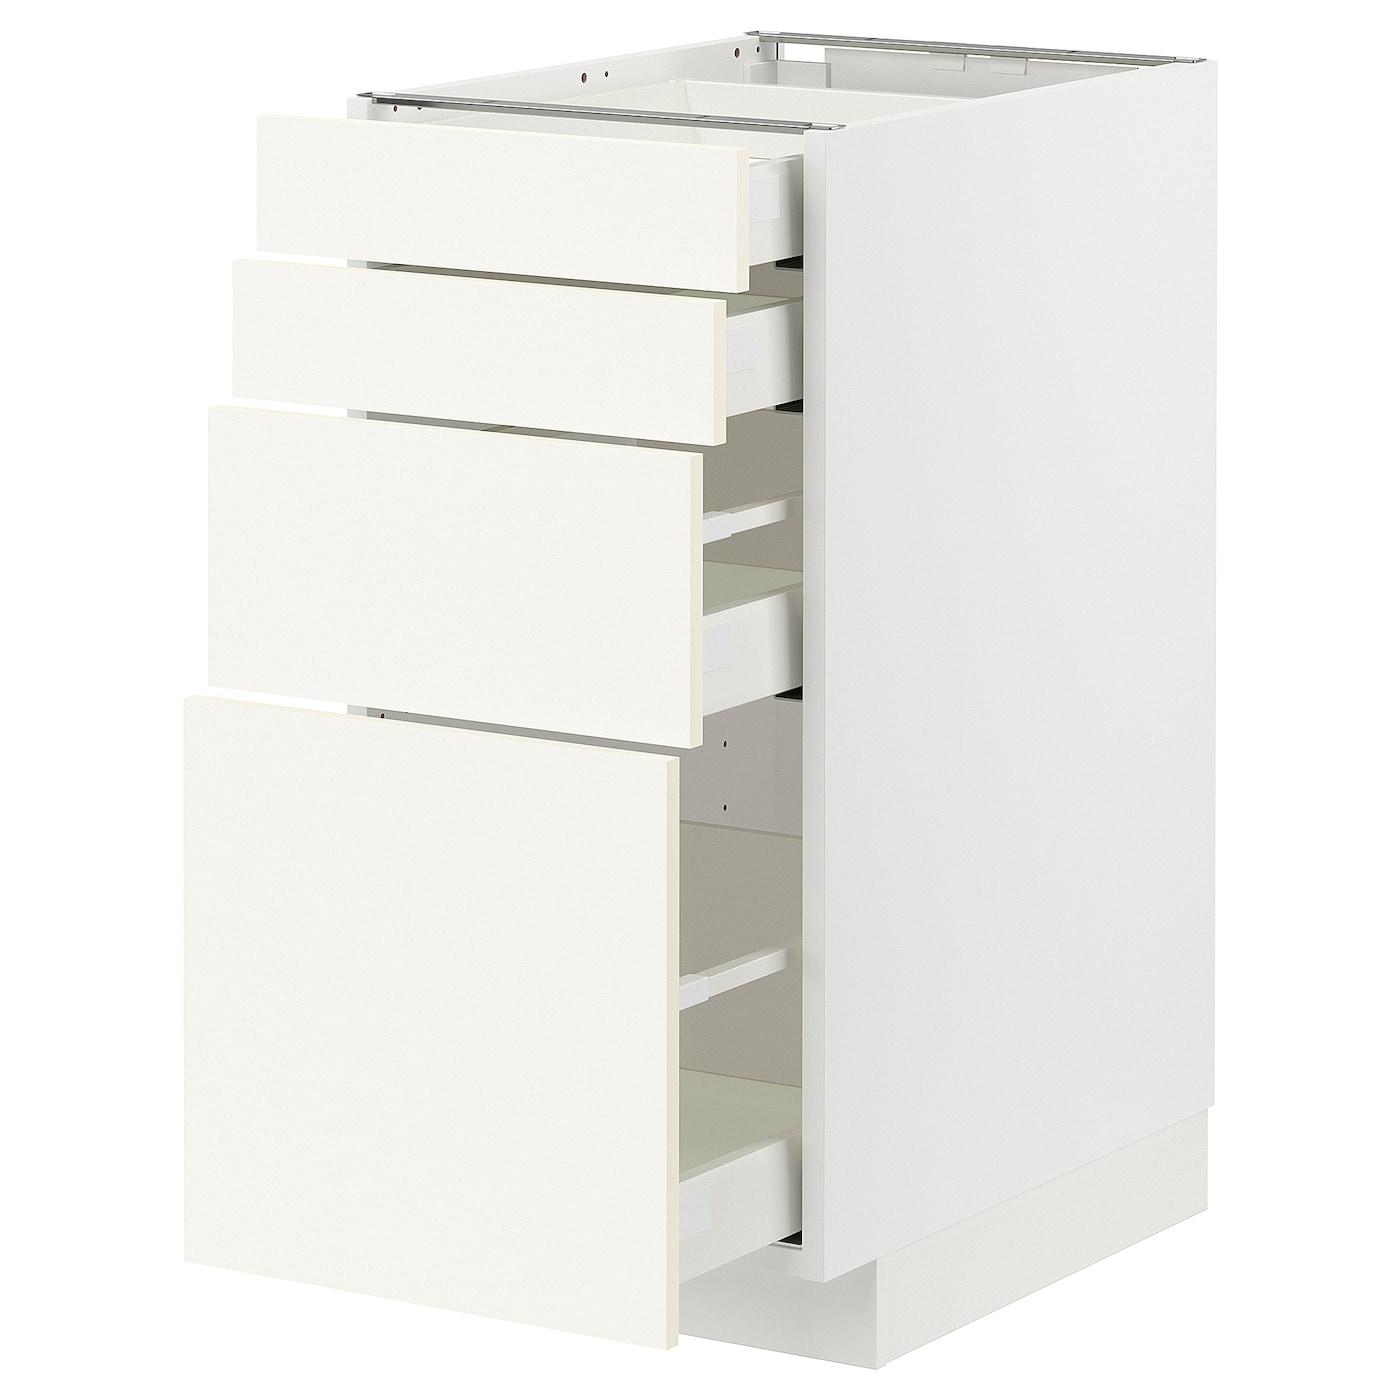 Напольный шкаф  - IKEA METOD MAXIMERA, 88x61,6x40см, белый, МЕТОД МАКСИМЕРА ИКЕА